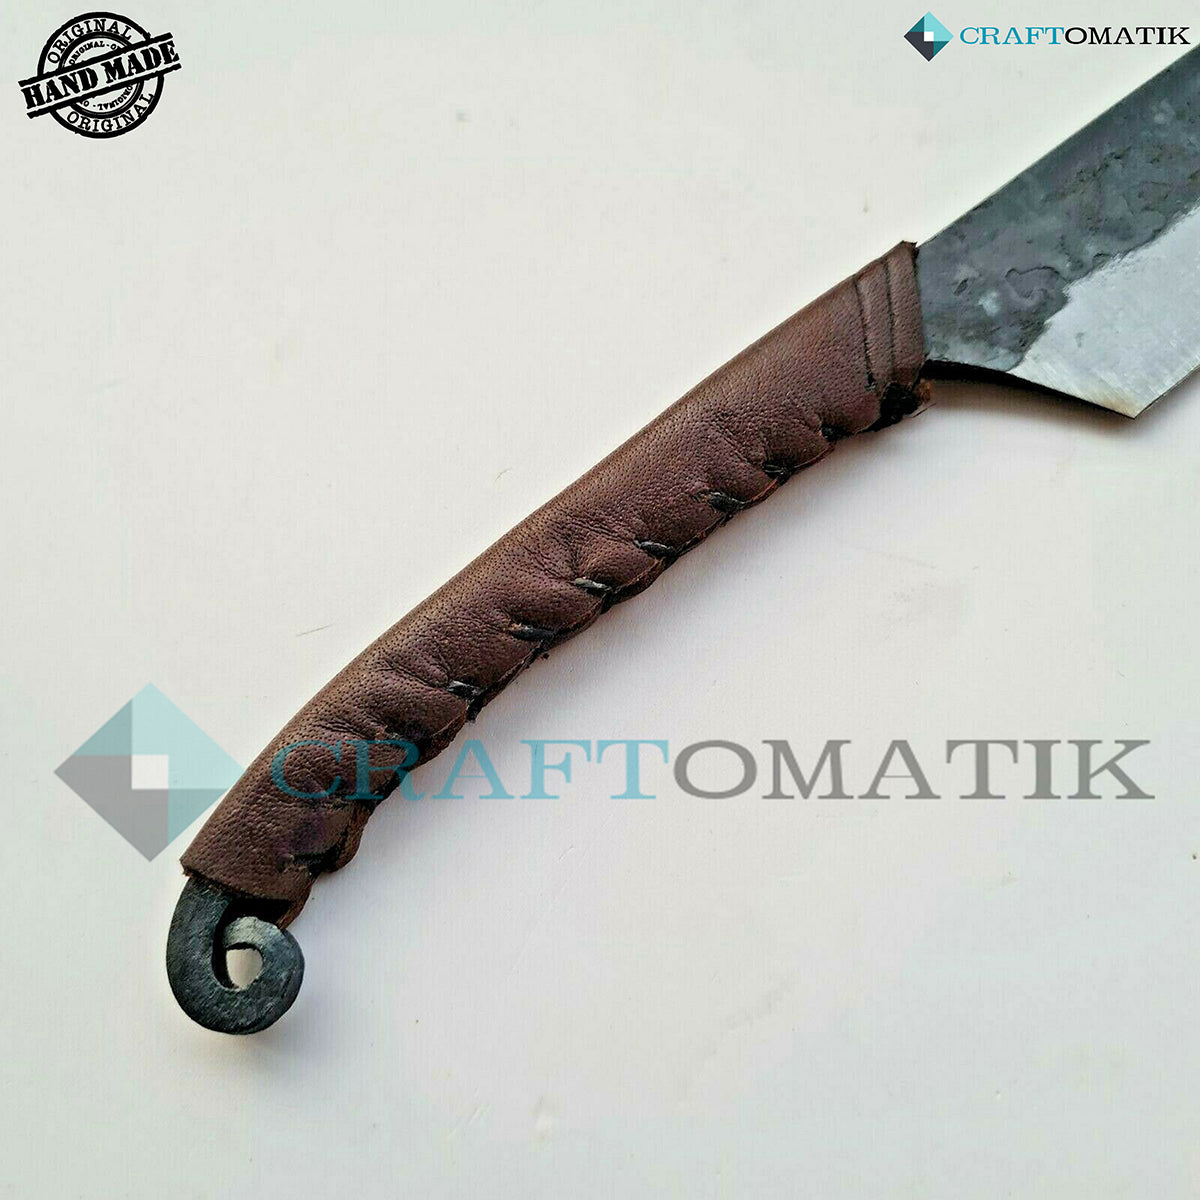 Keltisches Messer - IV